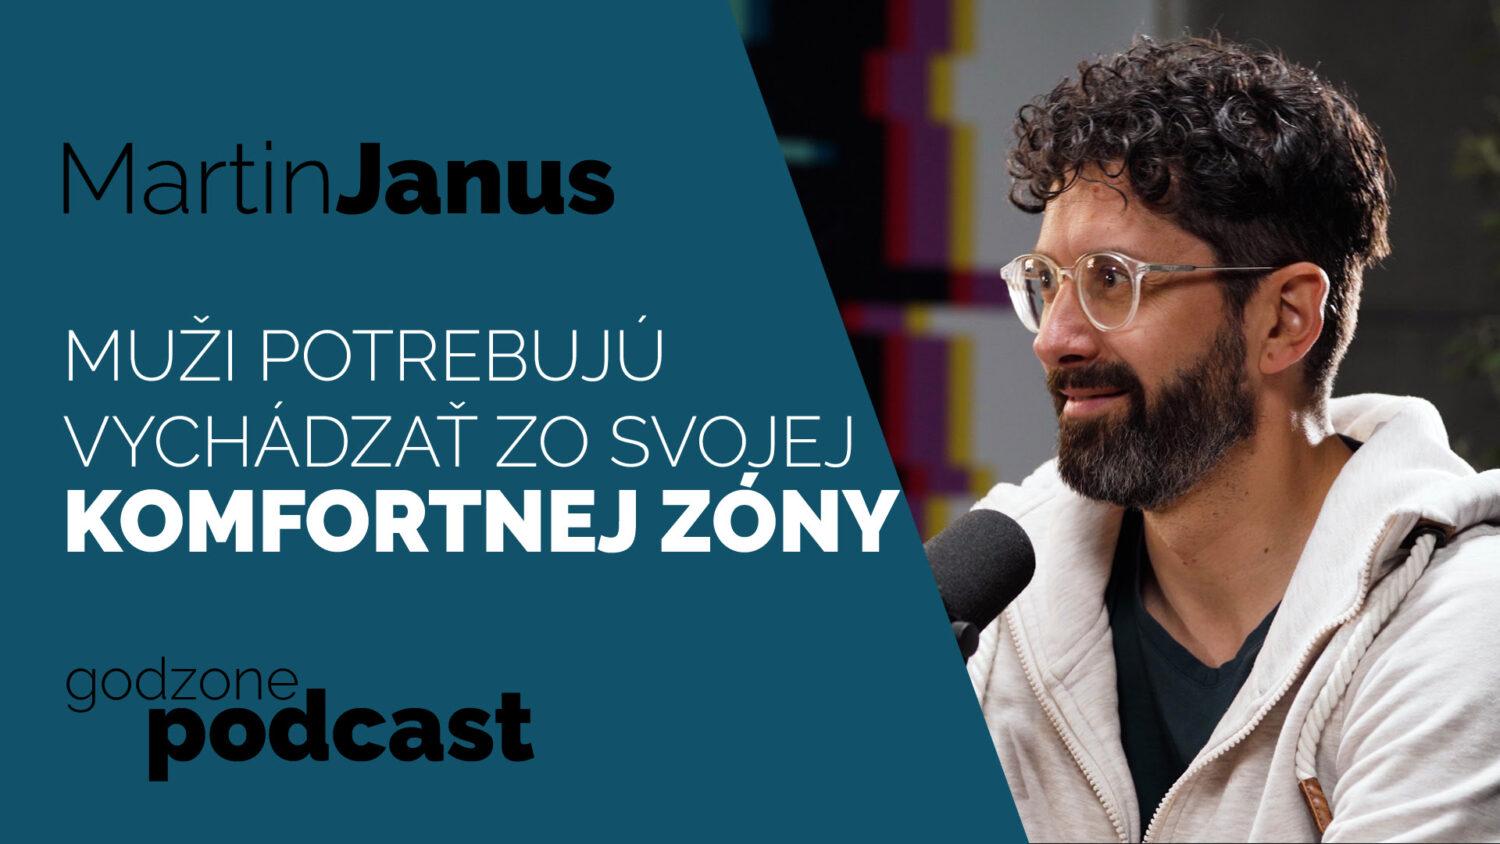 Godzone podcast_Martin Janus: Muži potrebujú vychádzať zo svojej komfortnej zóny